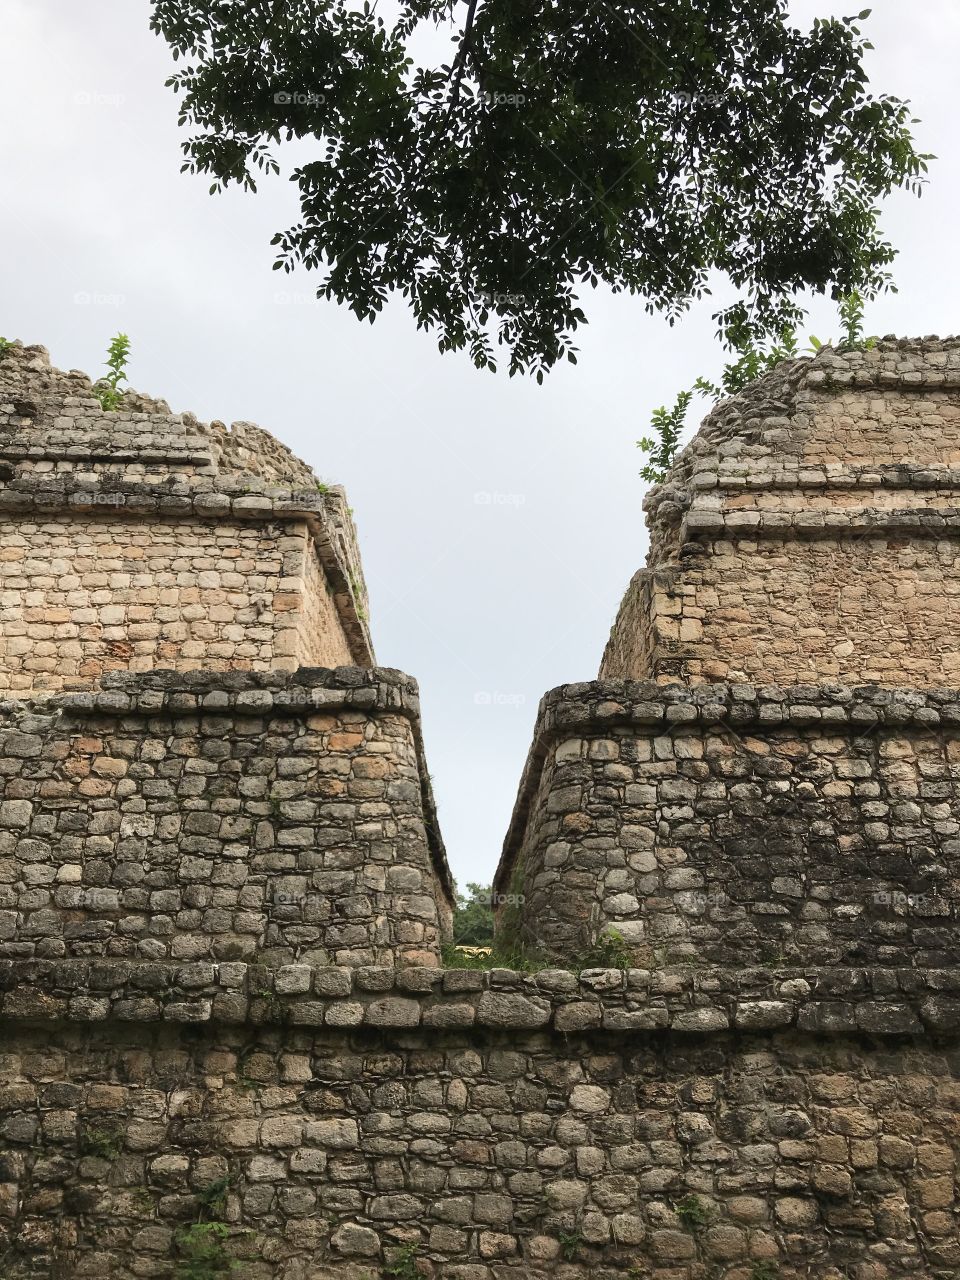 Ancient Mayan ruins in the Yucatán peninsula 